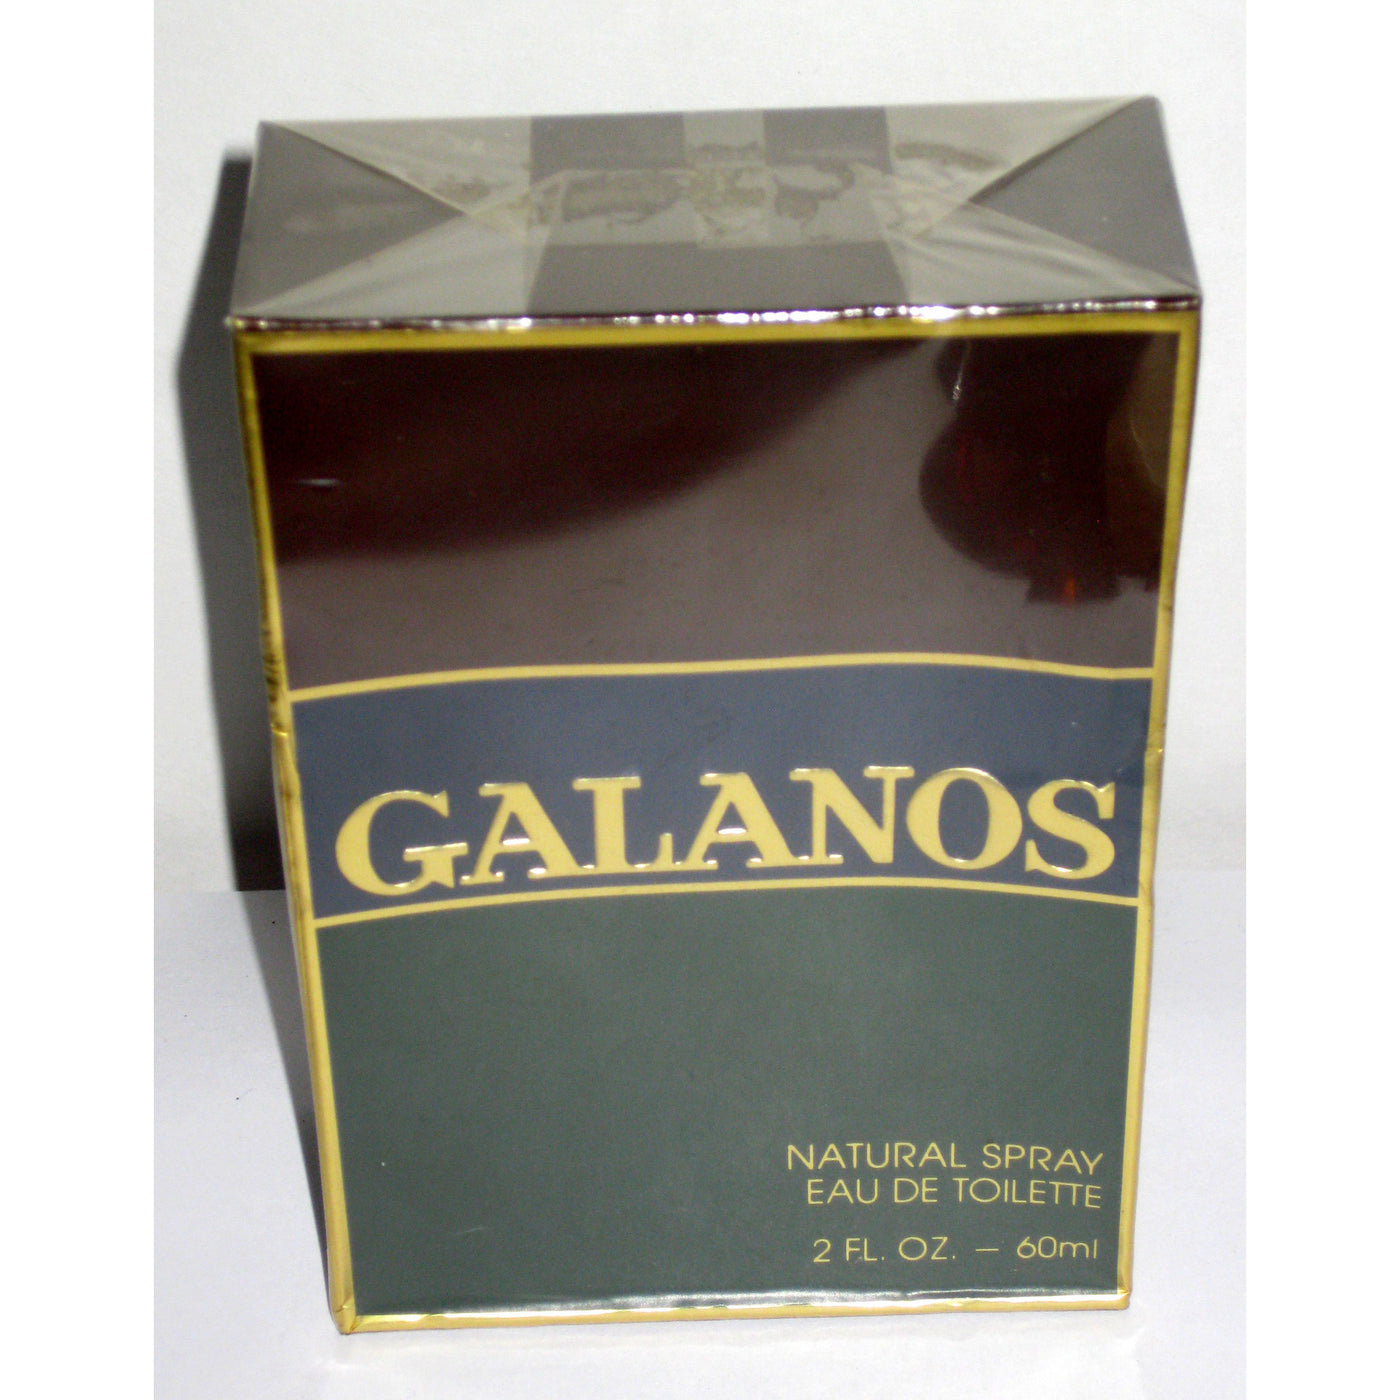 Vintage Galanos Natural Spray Eau De Toilette